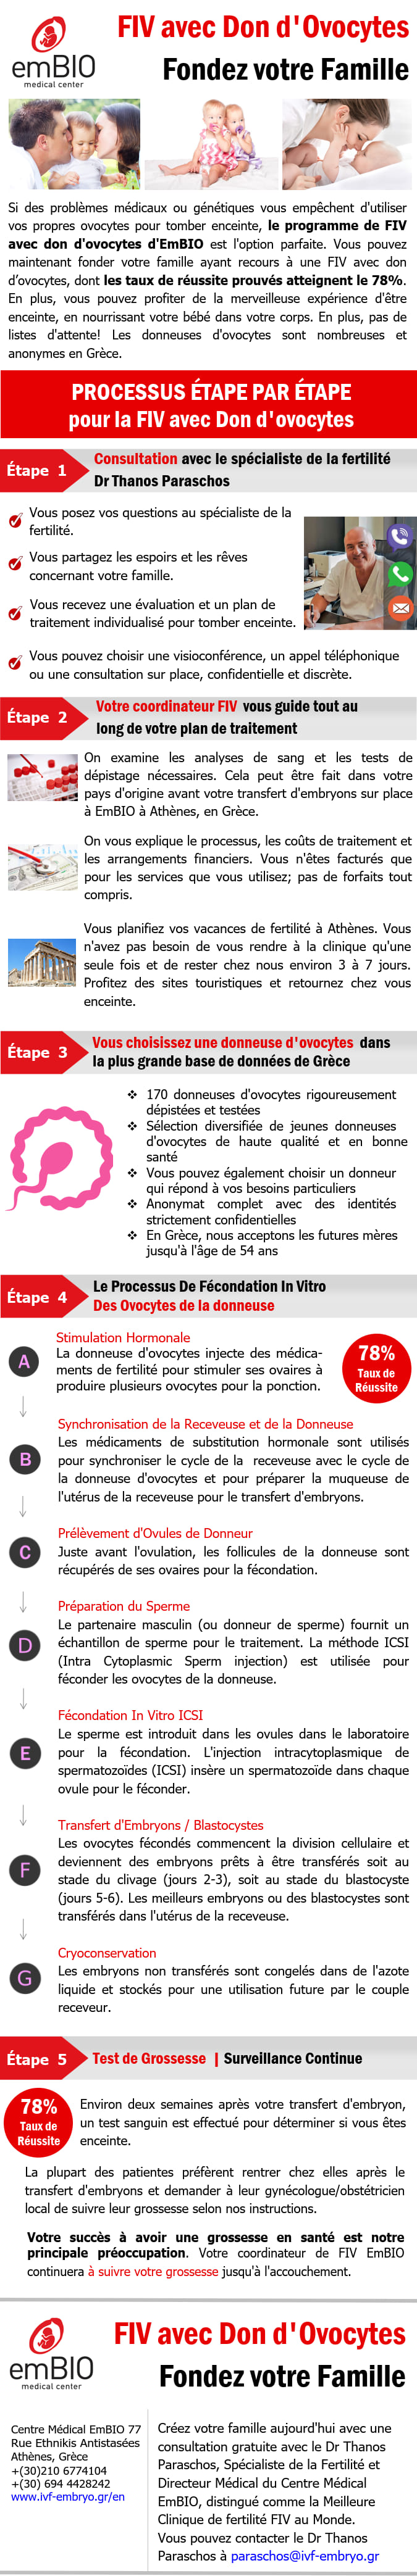 fiv avec don d’ovocytes infographic